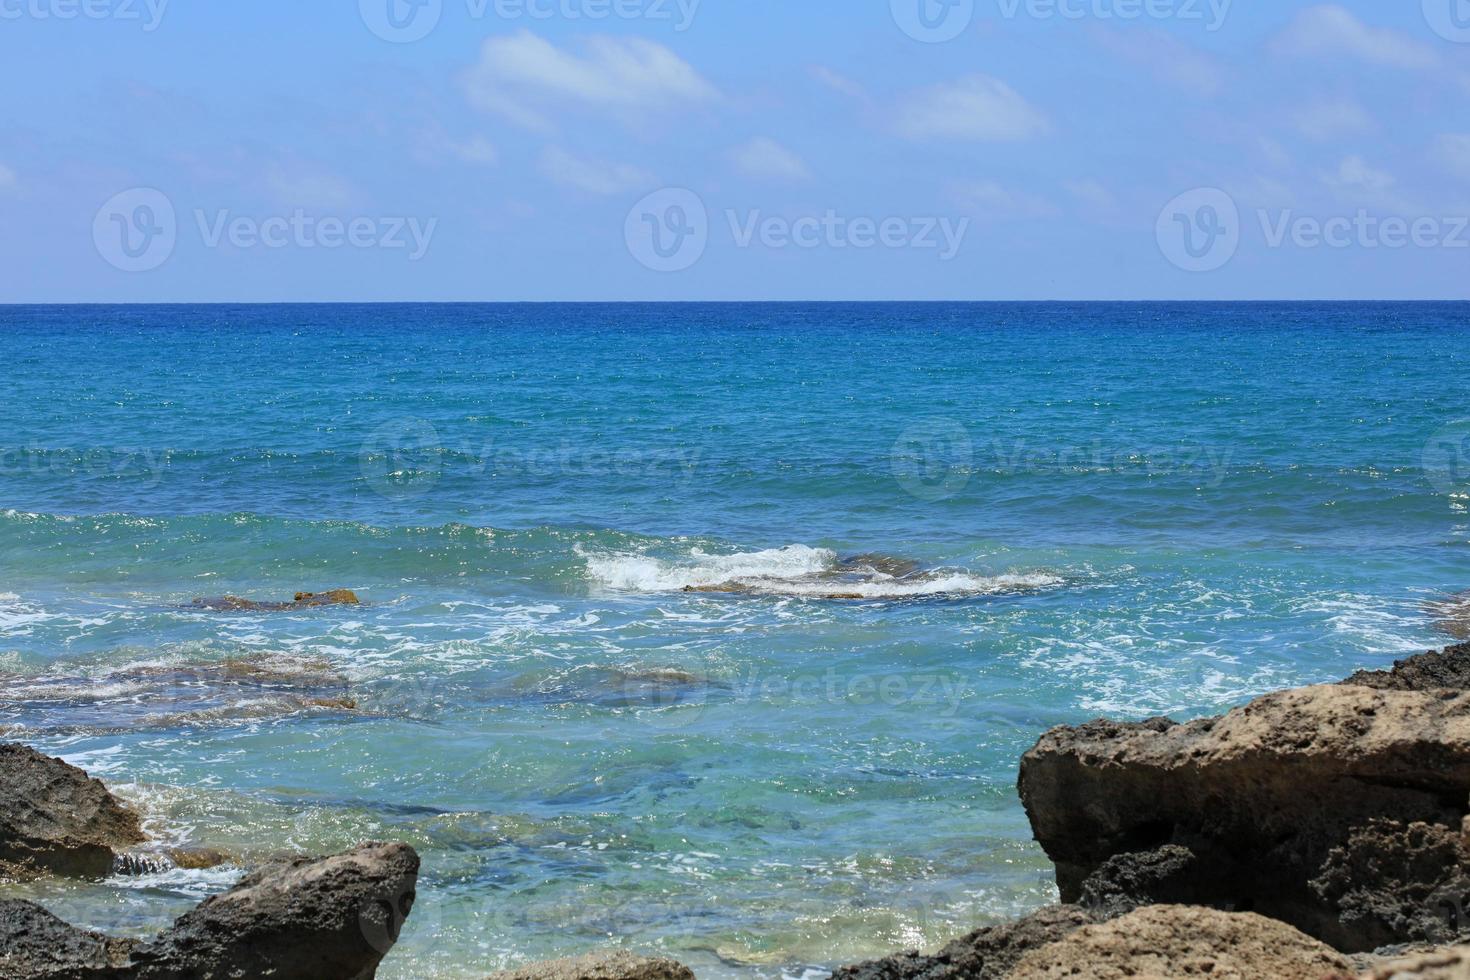 spiaggia di falassarna laguna blu isola di creta estate 2020 vacanze covid19 foto